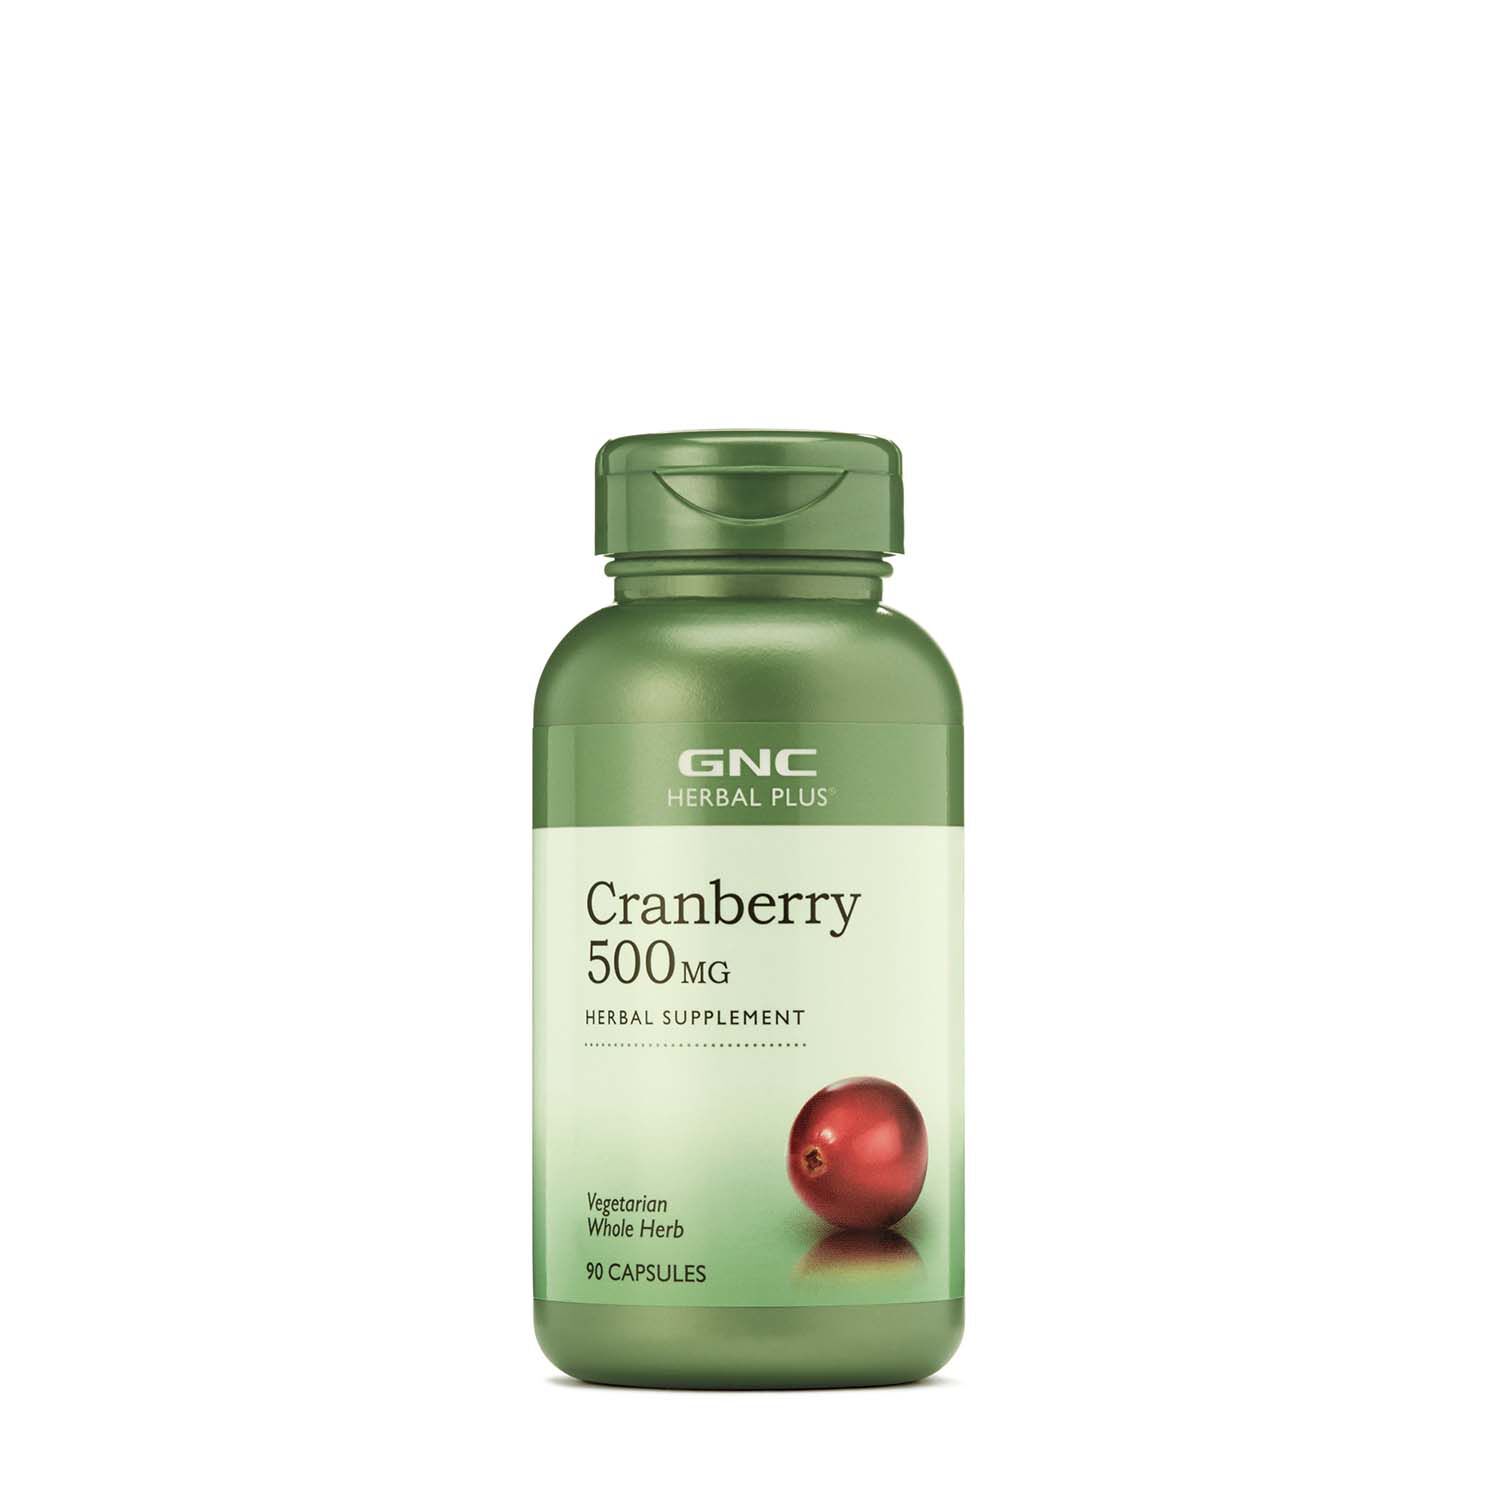 GNC Herbal Plus Cranberry 500Mg - 90 Capsules (90 Servings)